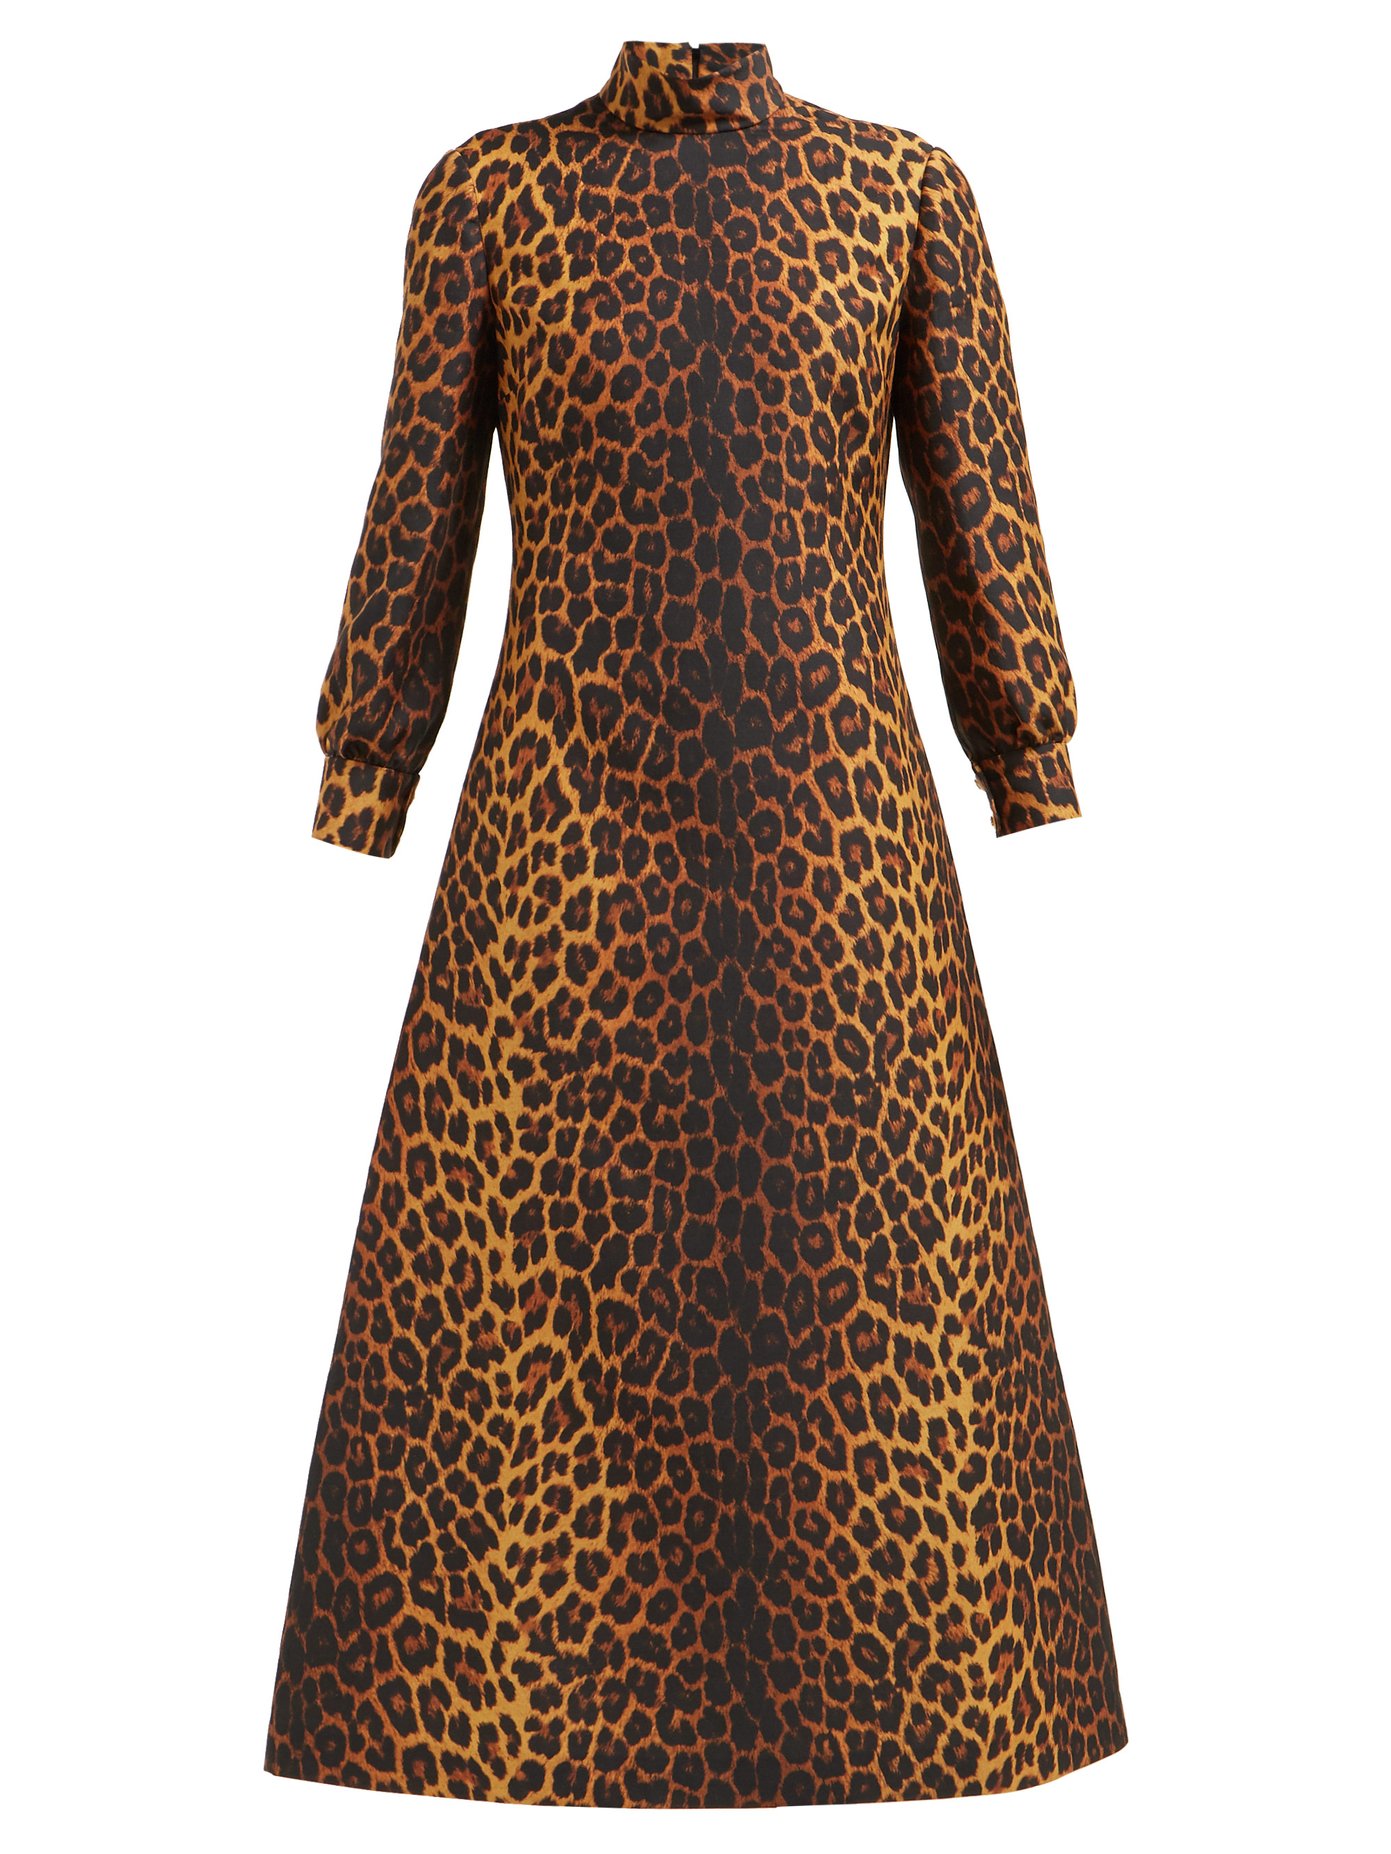 gucci leopard print dress